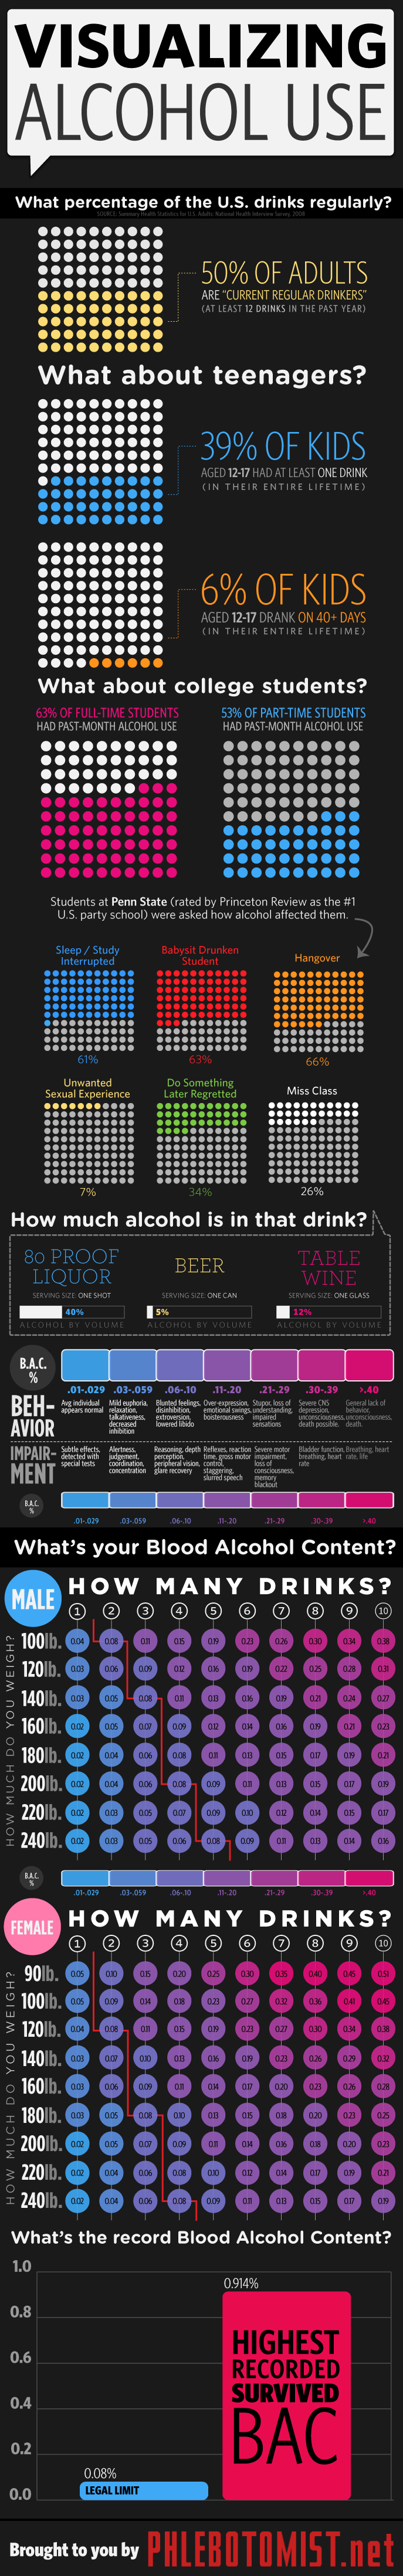 visualizing-alcohol-use